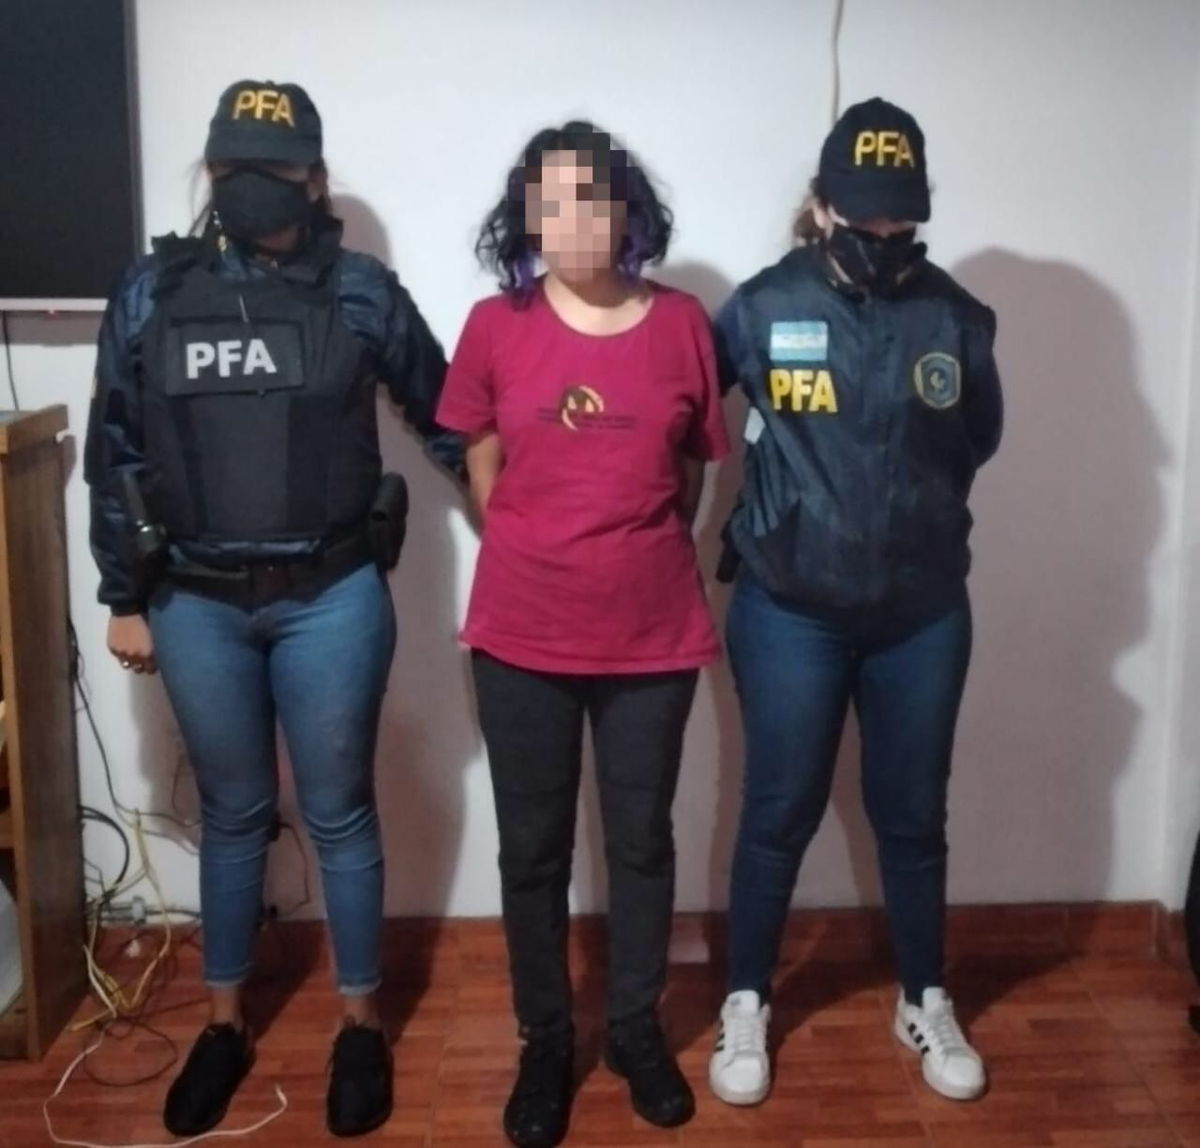 Los allanamientos de la Policía Federal se realizaron en CABA y en varias localidades de la zona oeste de la provincia de Buenos Aires.